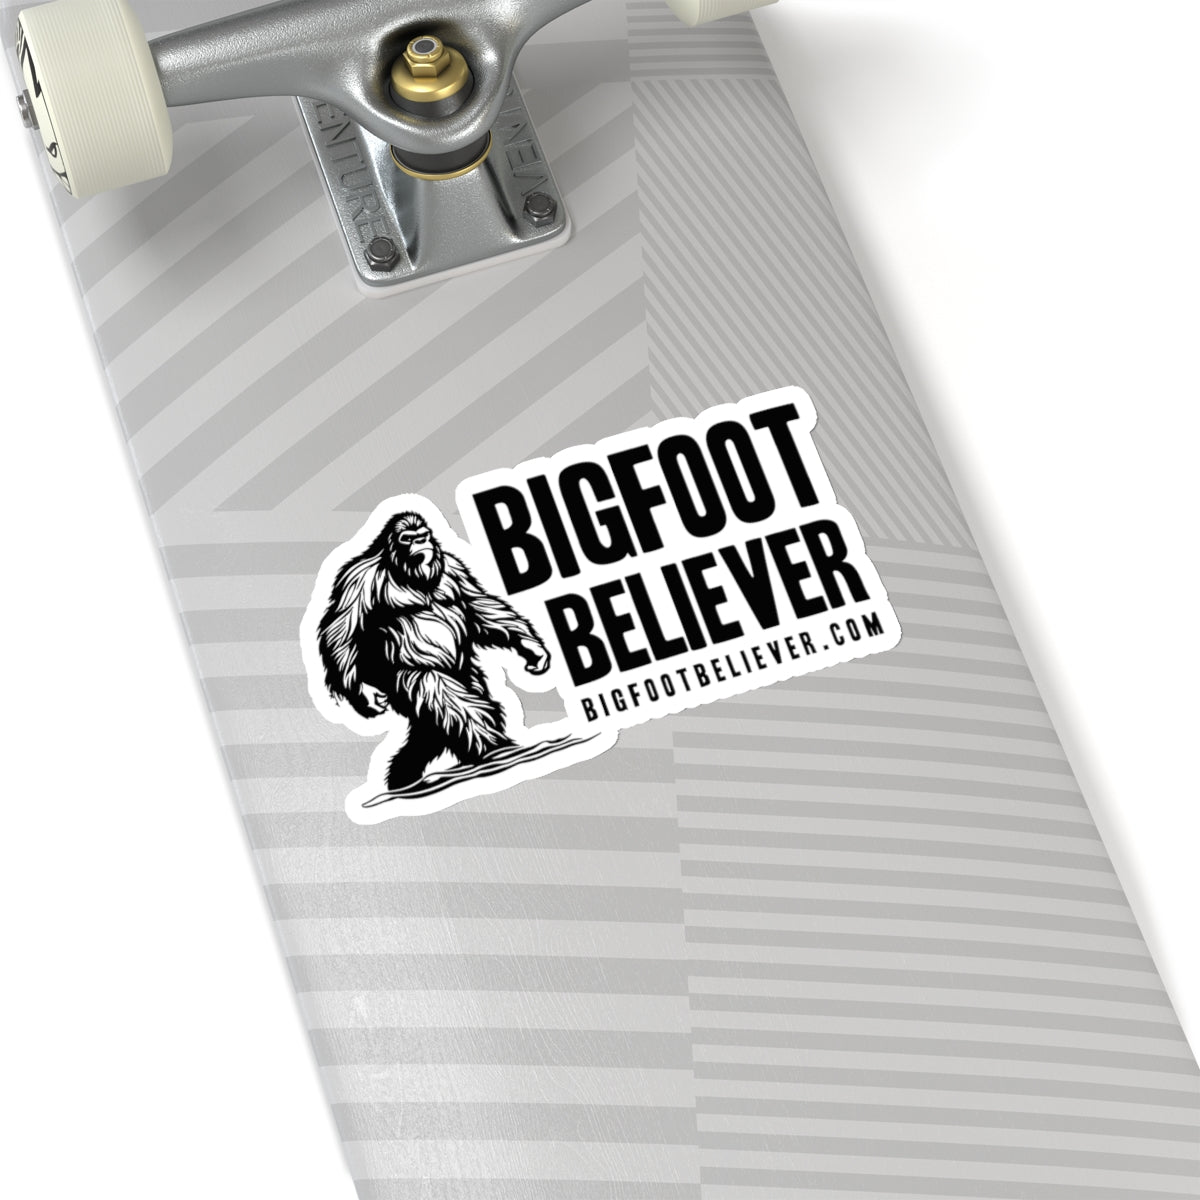 Bigfoot Believer l Kiss-Cut Stickers